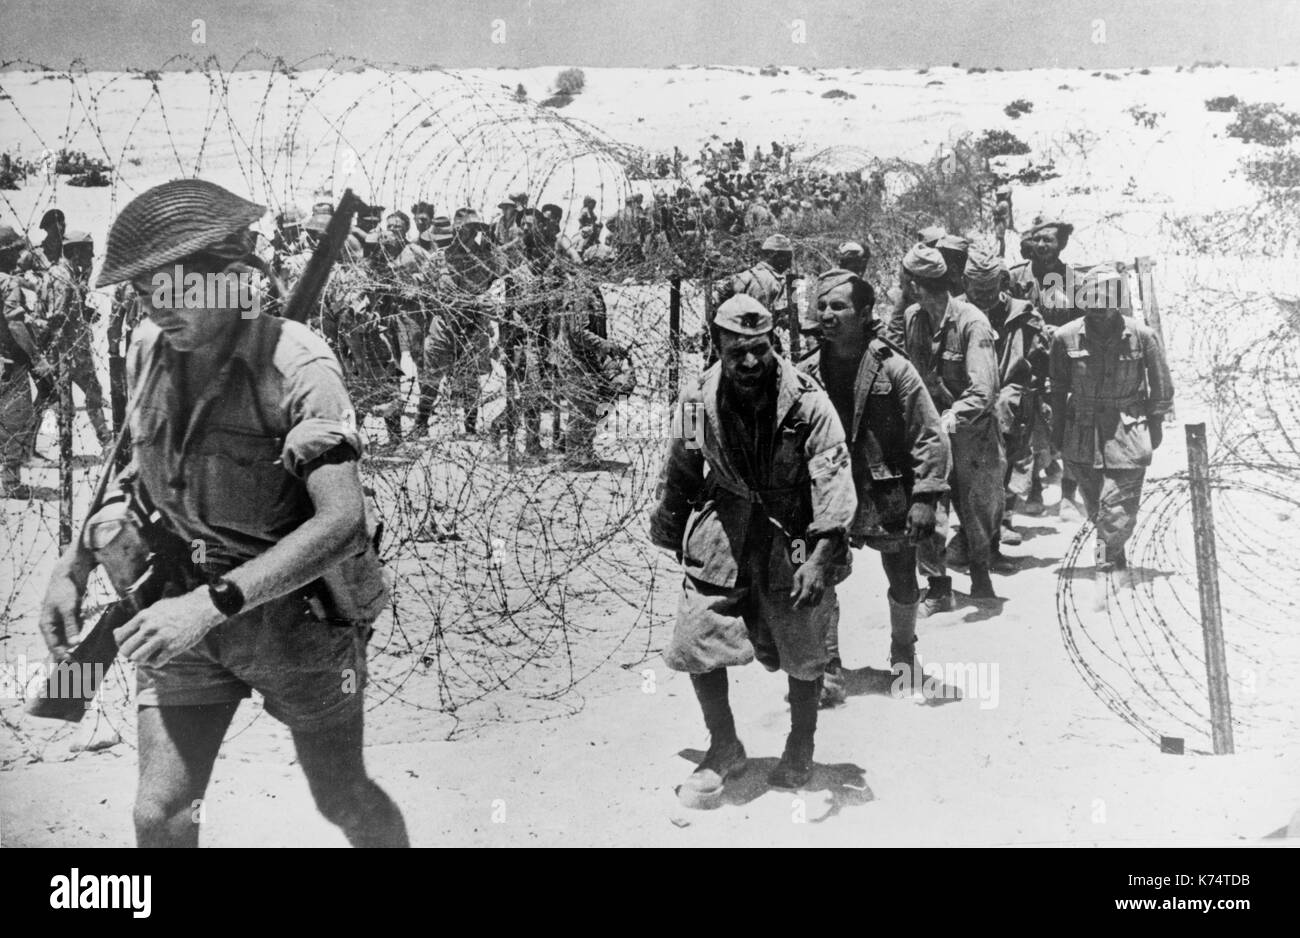 Italienische Kriegsgefangene in Kämpfen in der El Alamein aufgefangen geben Sie einen stacheldraht Gehäuse durch ihren Schutz voraus, El Alamein, Ägypten, 11/1942. Stockfoto